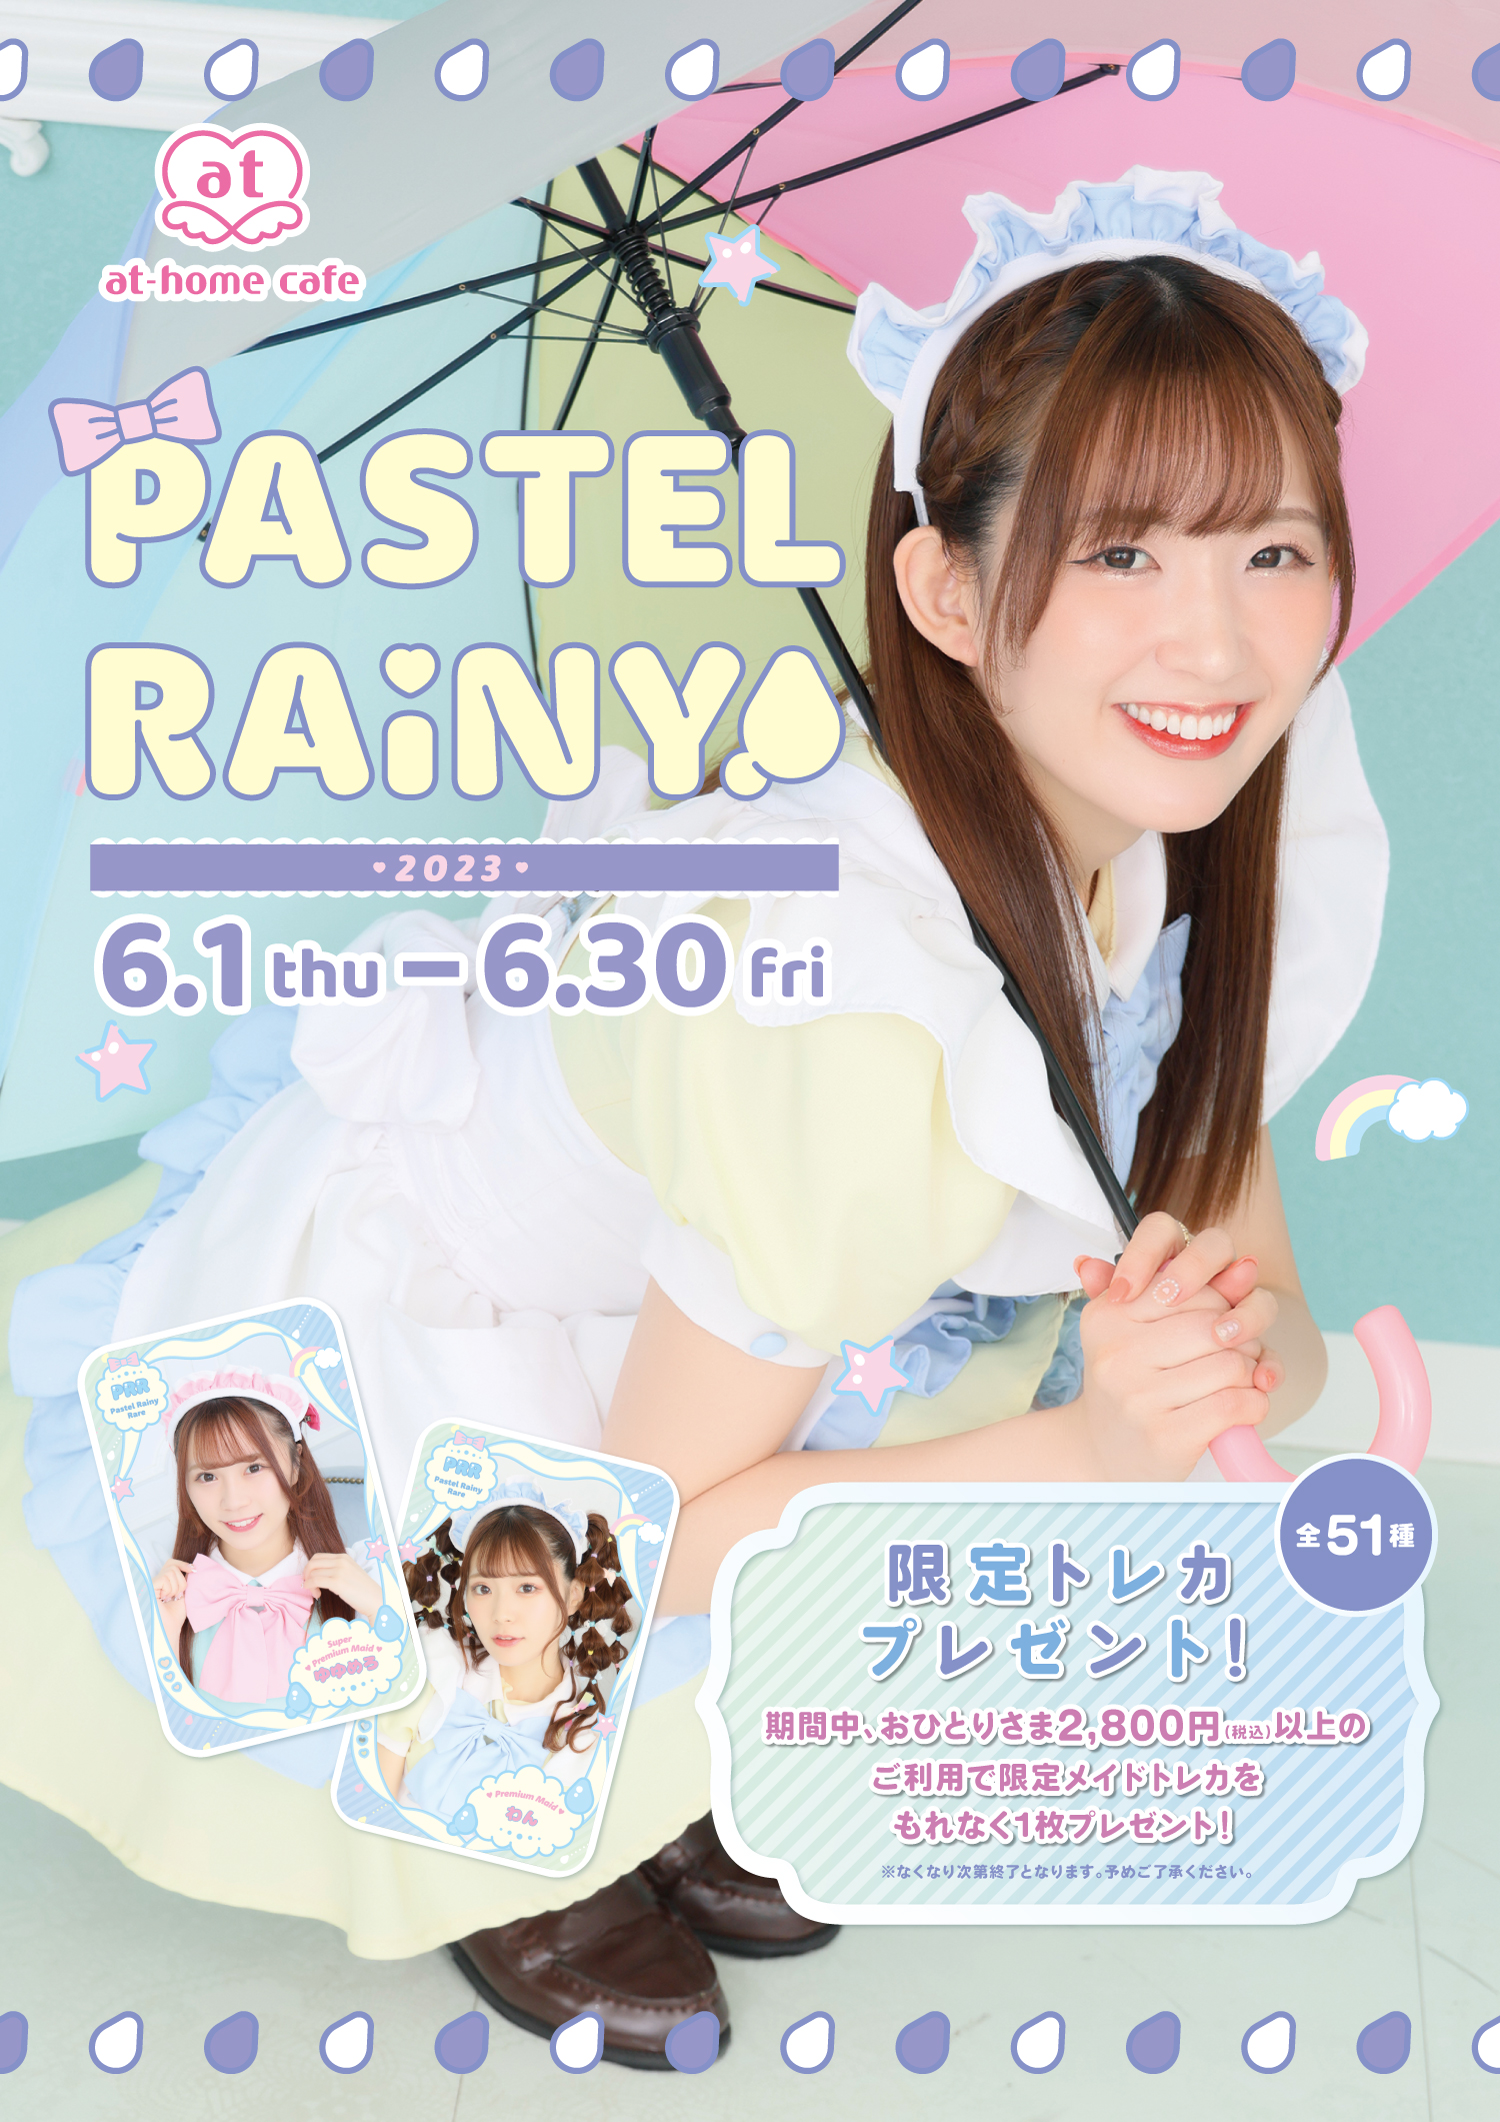 シーズナルイベント『PASTEL RAINY 2023』開催♡ | 秋葉原・大阪の